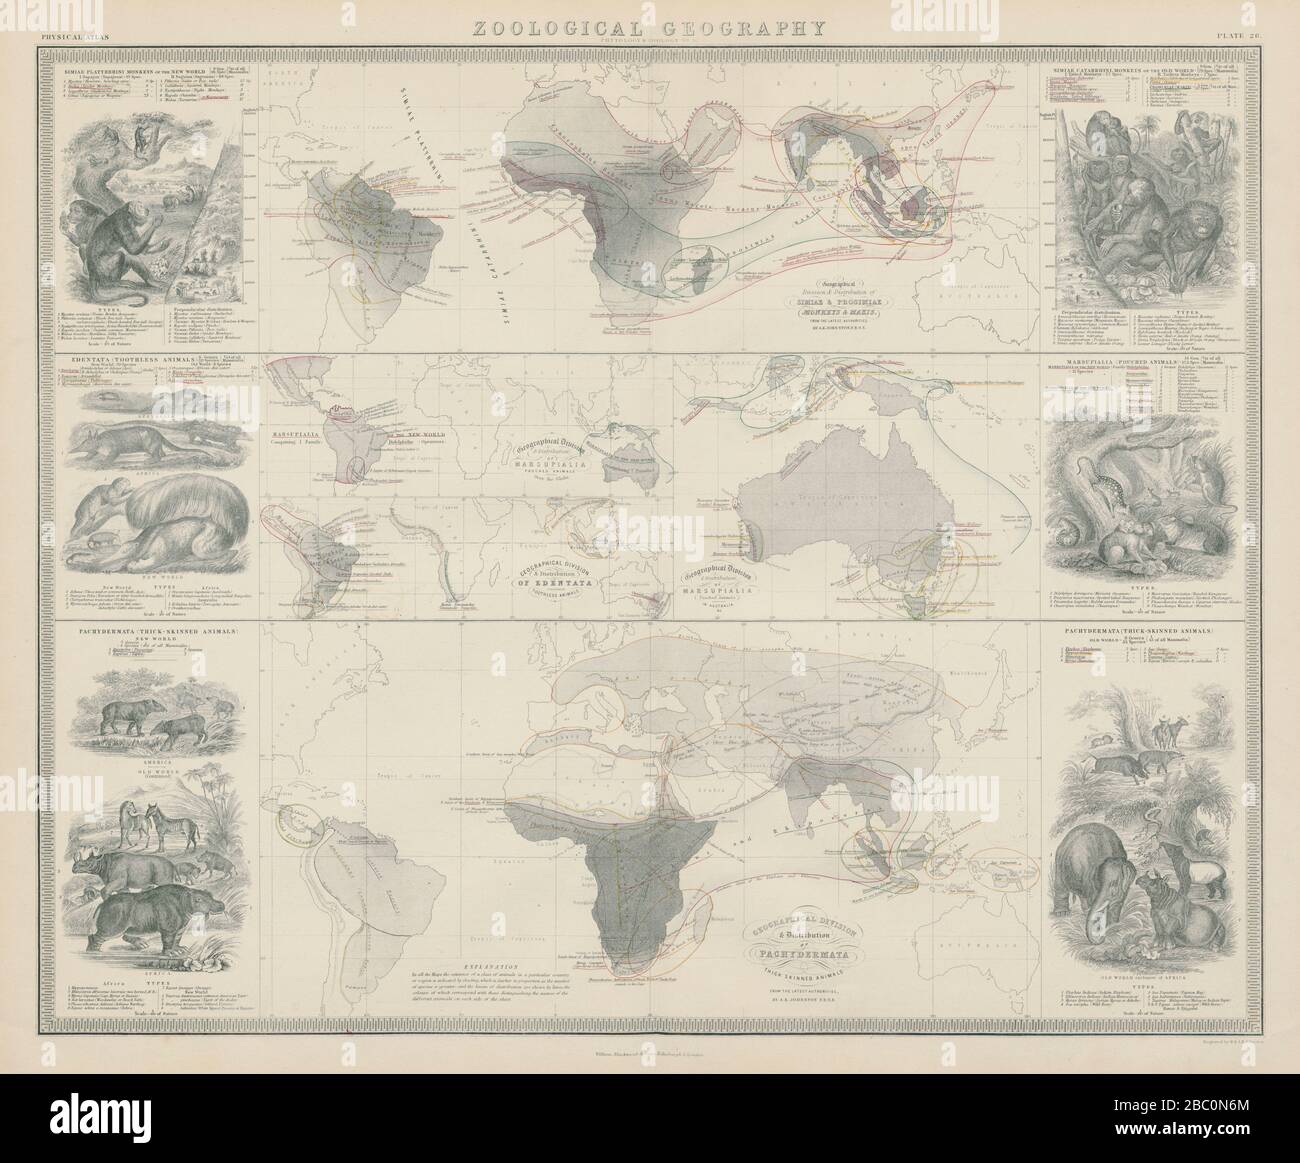 Zoologische Geographie. Pachydermata - Dickhäutige Tiere Verteilung 1856 Karte Stockfoto